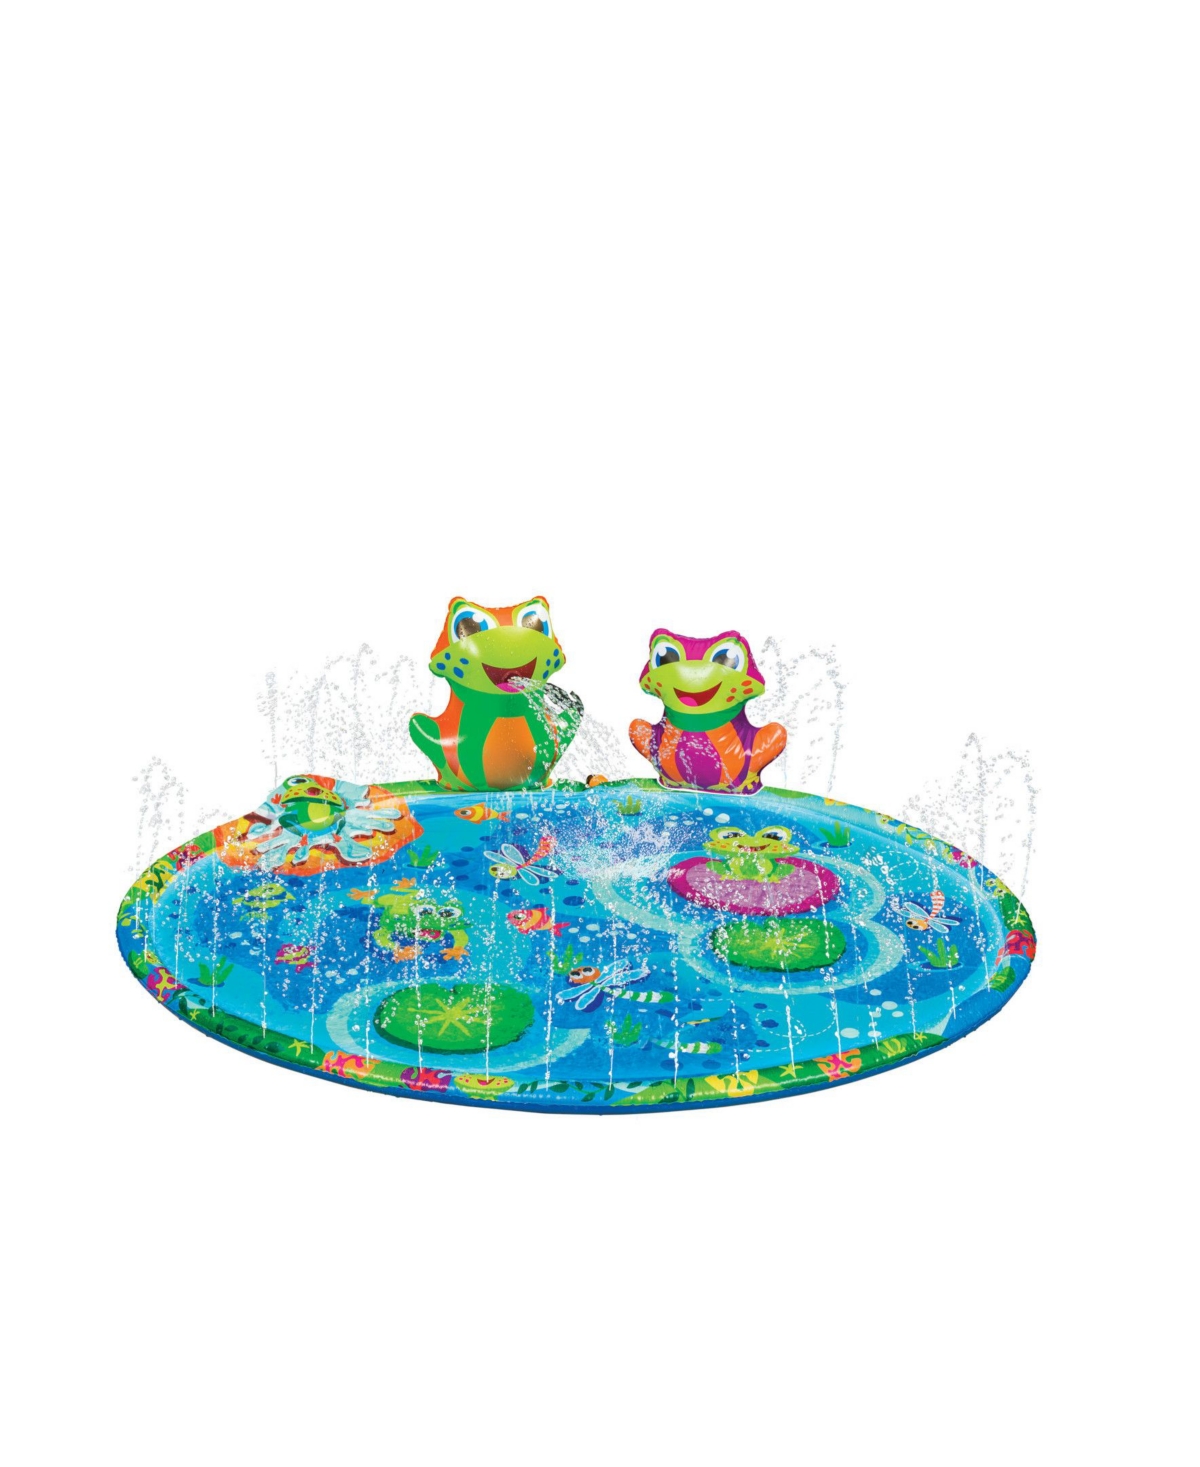 Froggy Pond Splash Mat Sprinkler - Outdoor Toy